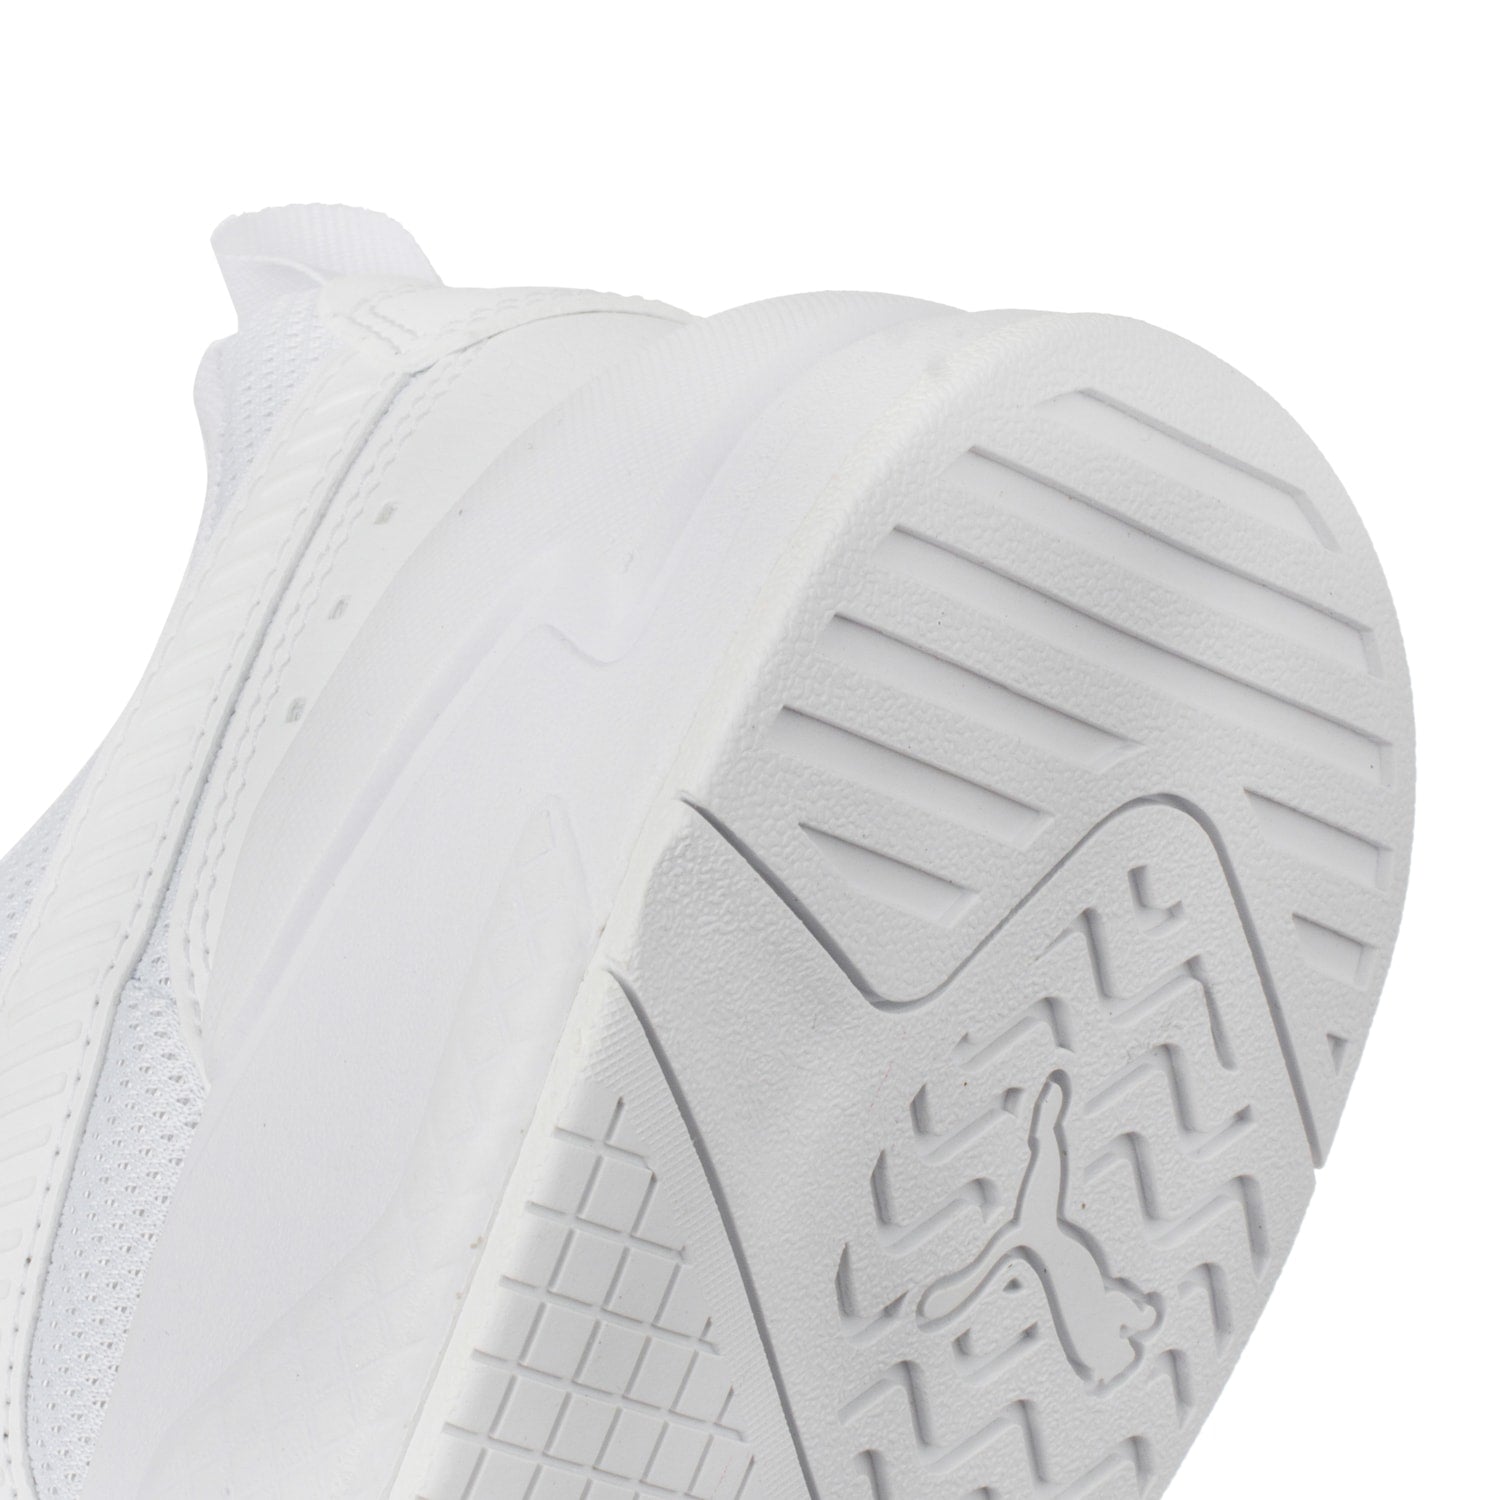 Tenis Puma X-Ray - Blanco | Shoelander.com - Footwear Retail